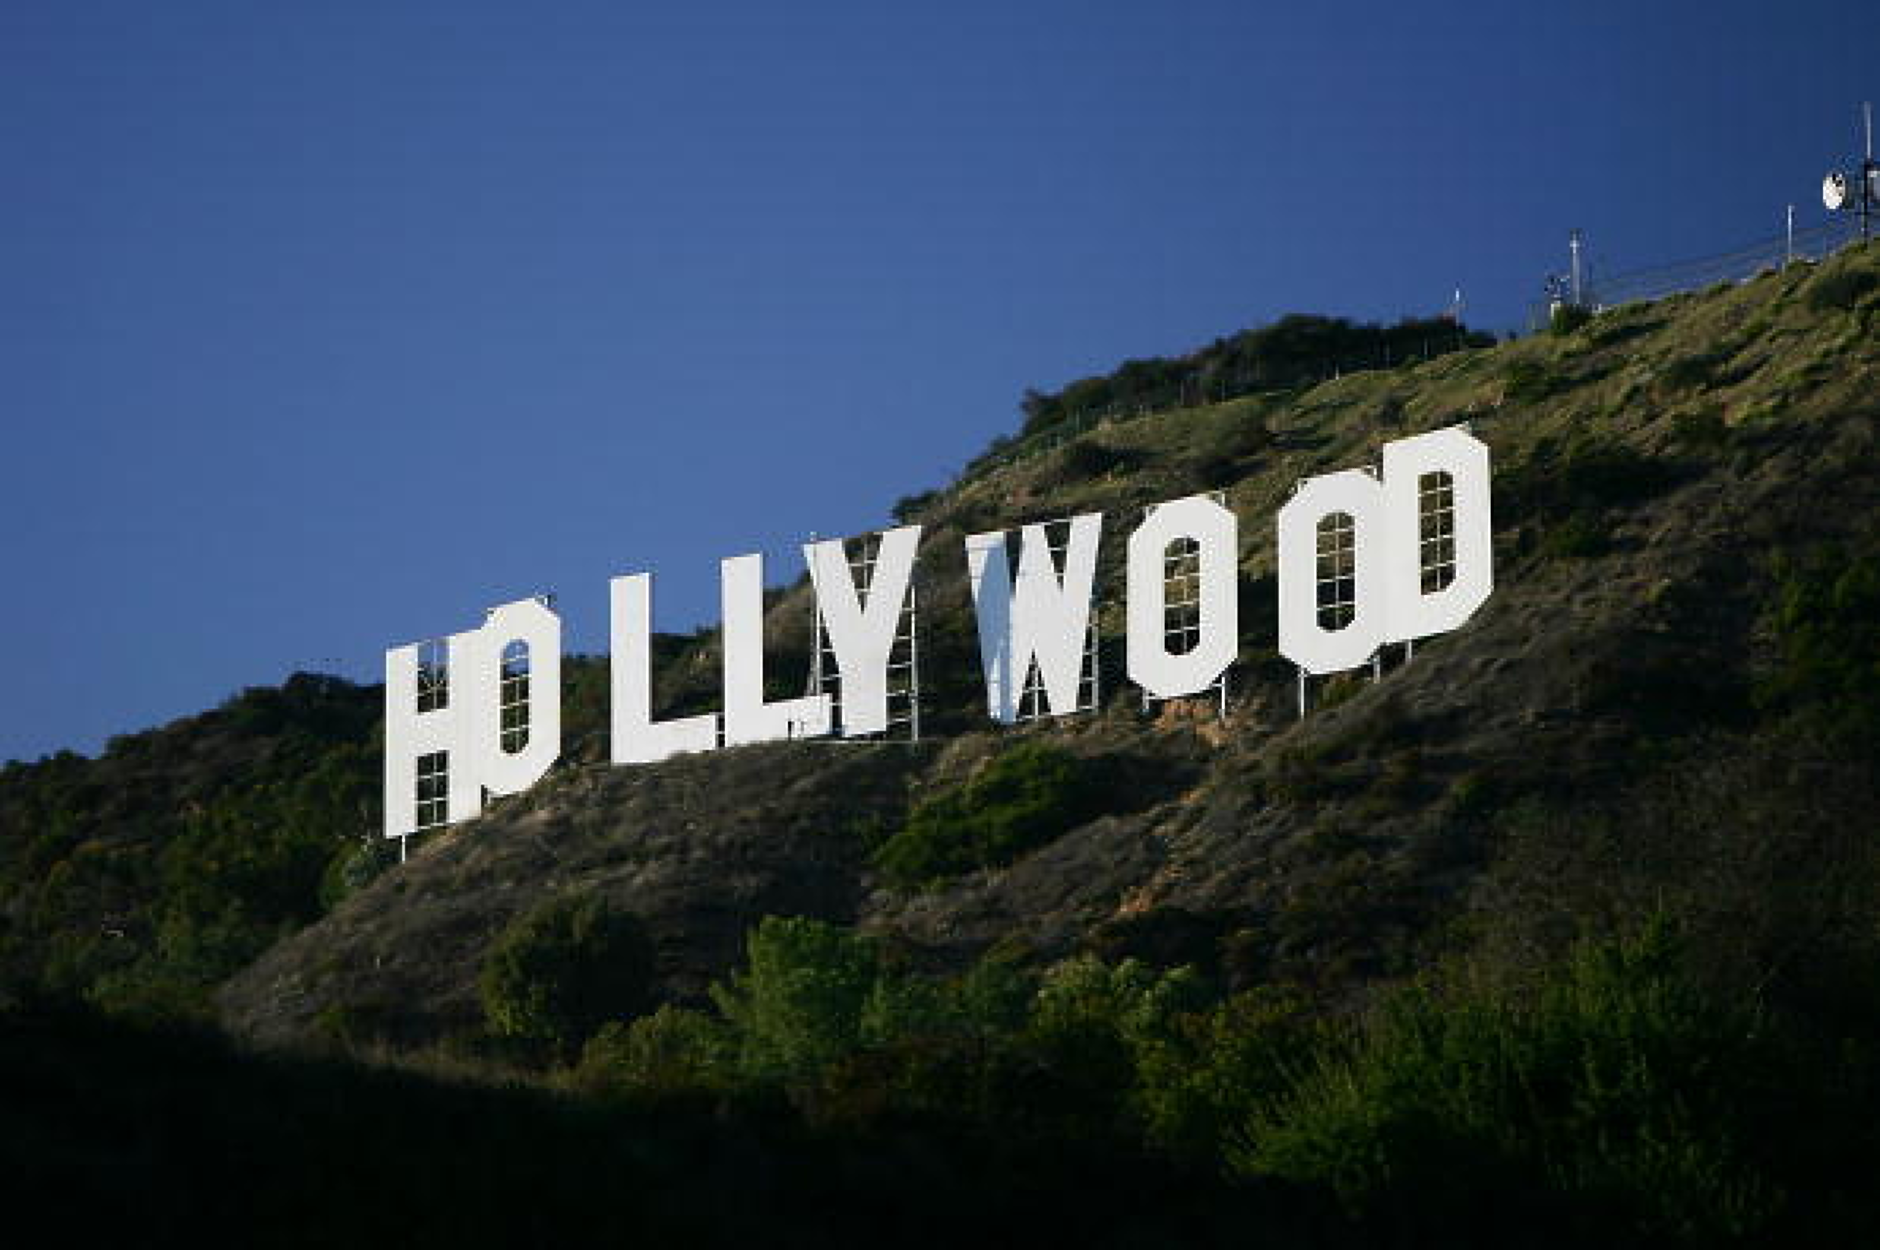 Холивудските студия предложиха 1 млрд. долара на актьорите, за да не стачкуват